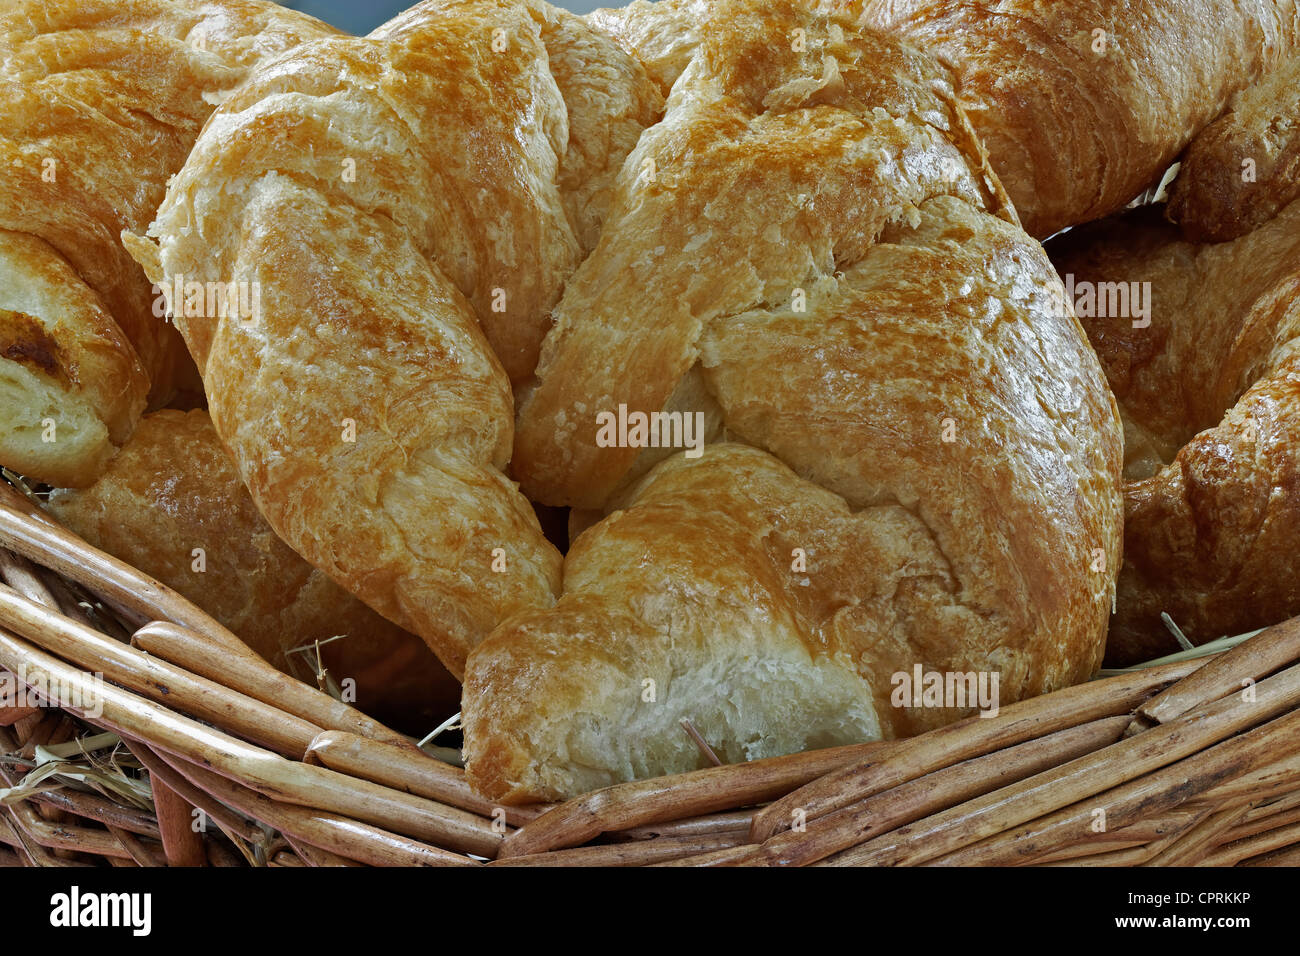 Un groupe de croissants frais dans un panier rempli de foin Banque D'Images